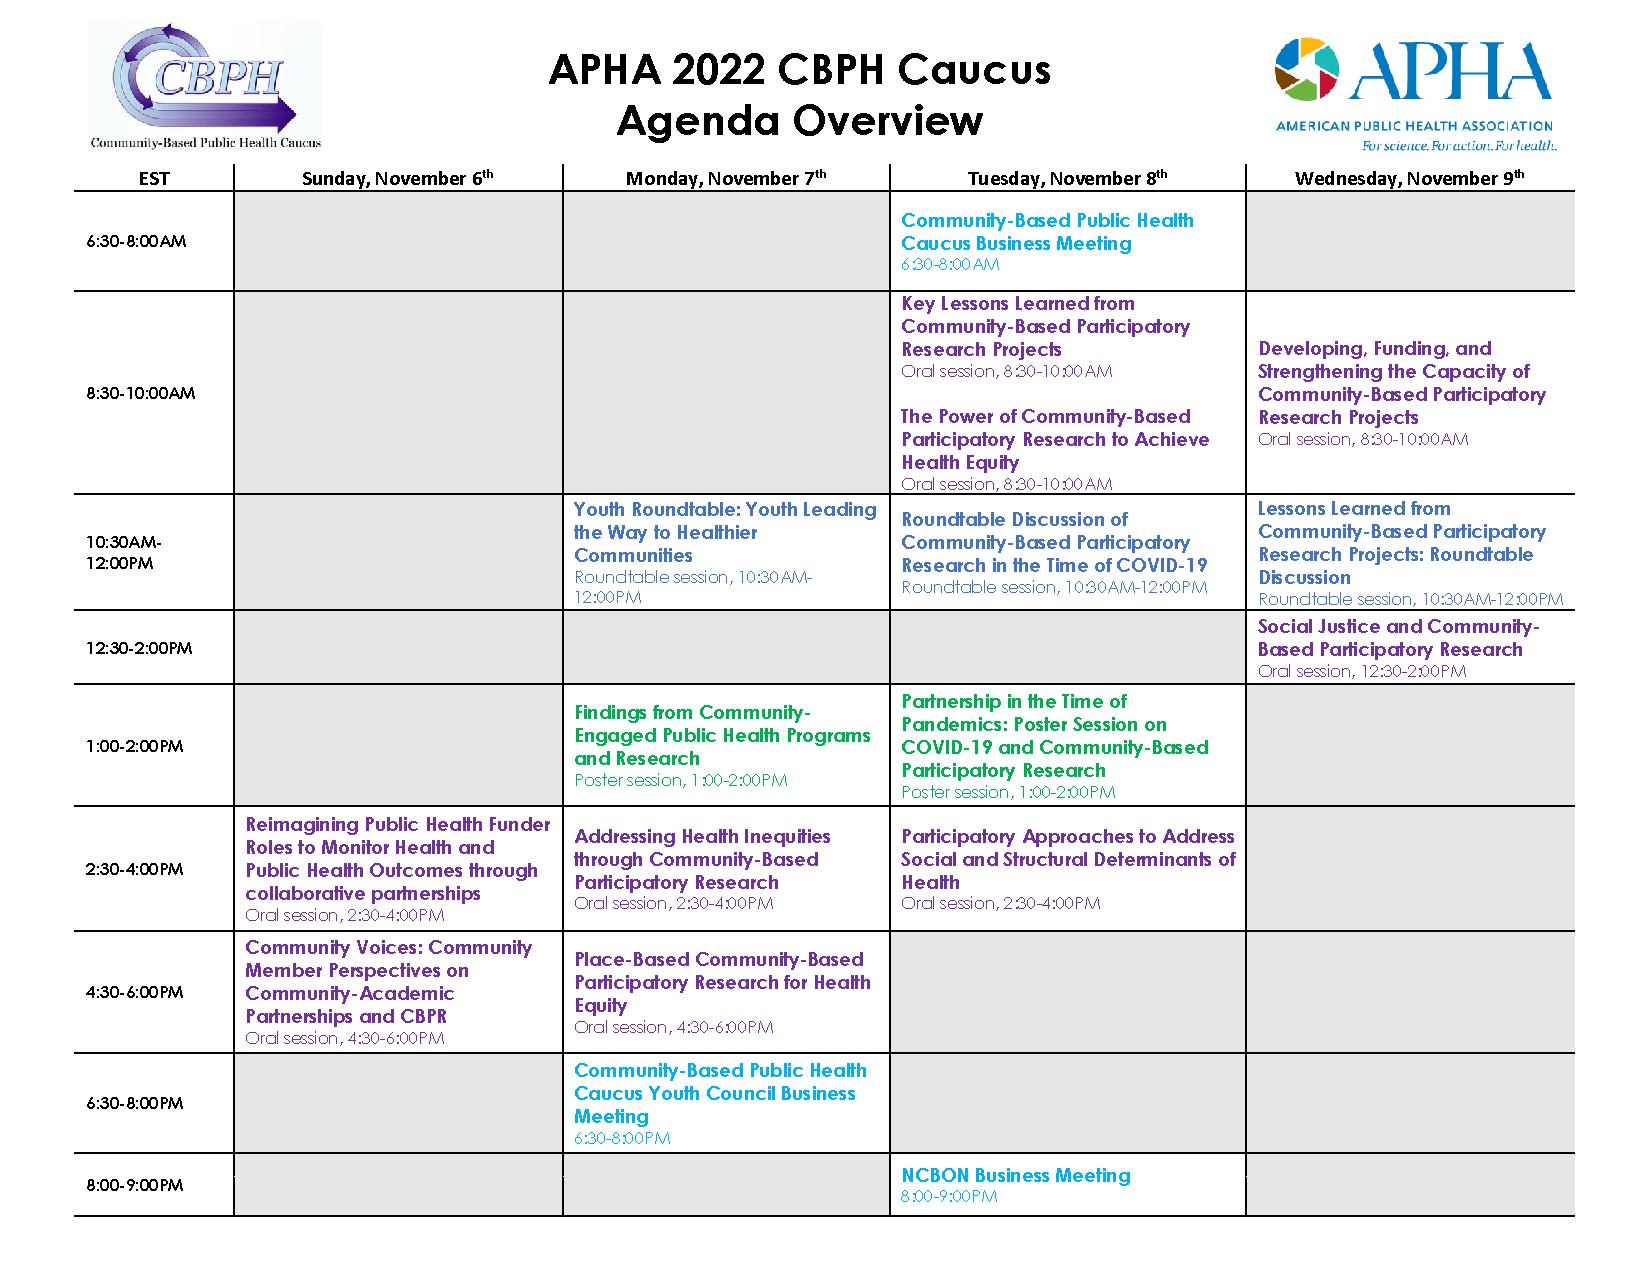 Overview-of-CBPH-Caucus-APHA-2022-Agenda no bft